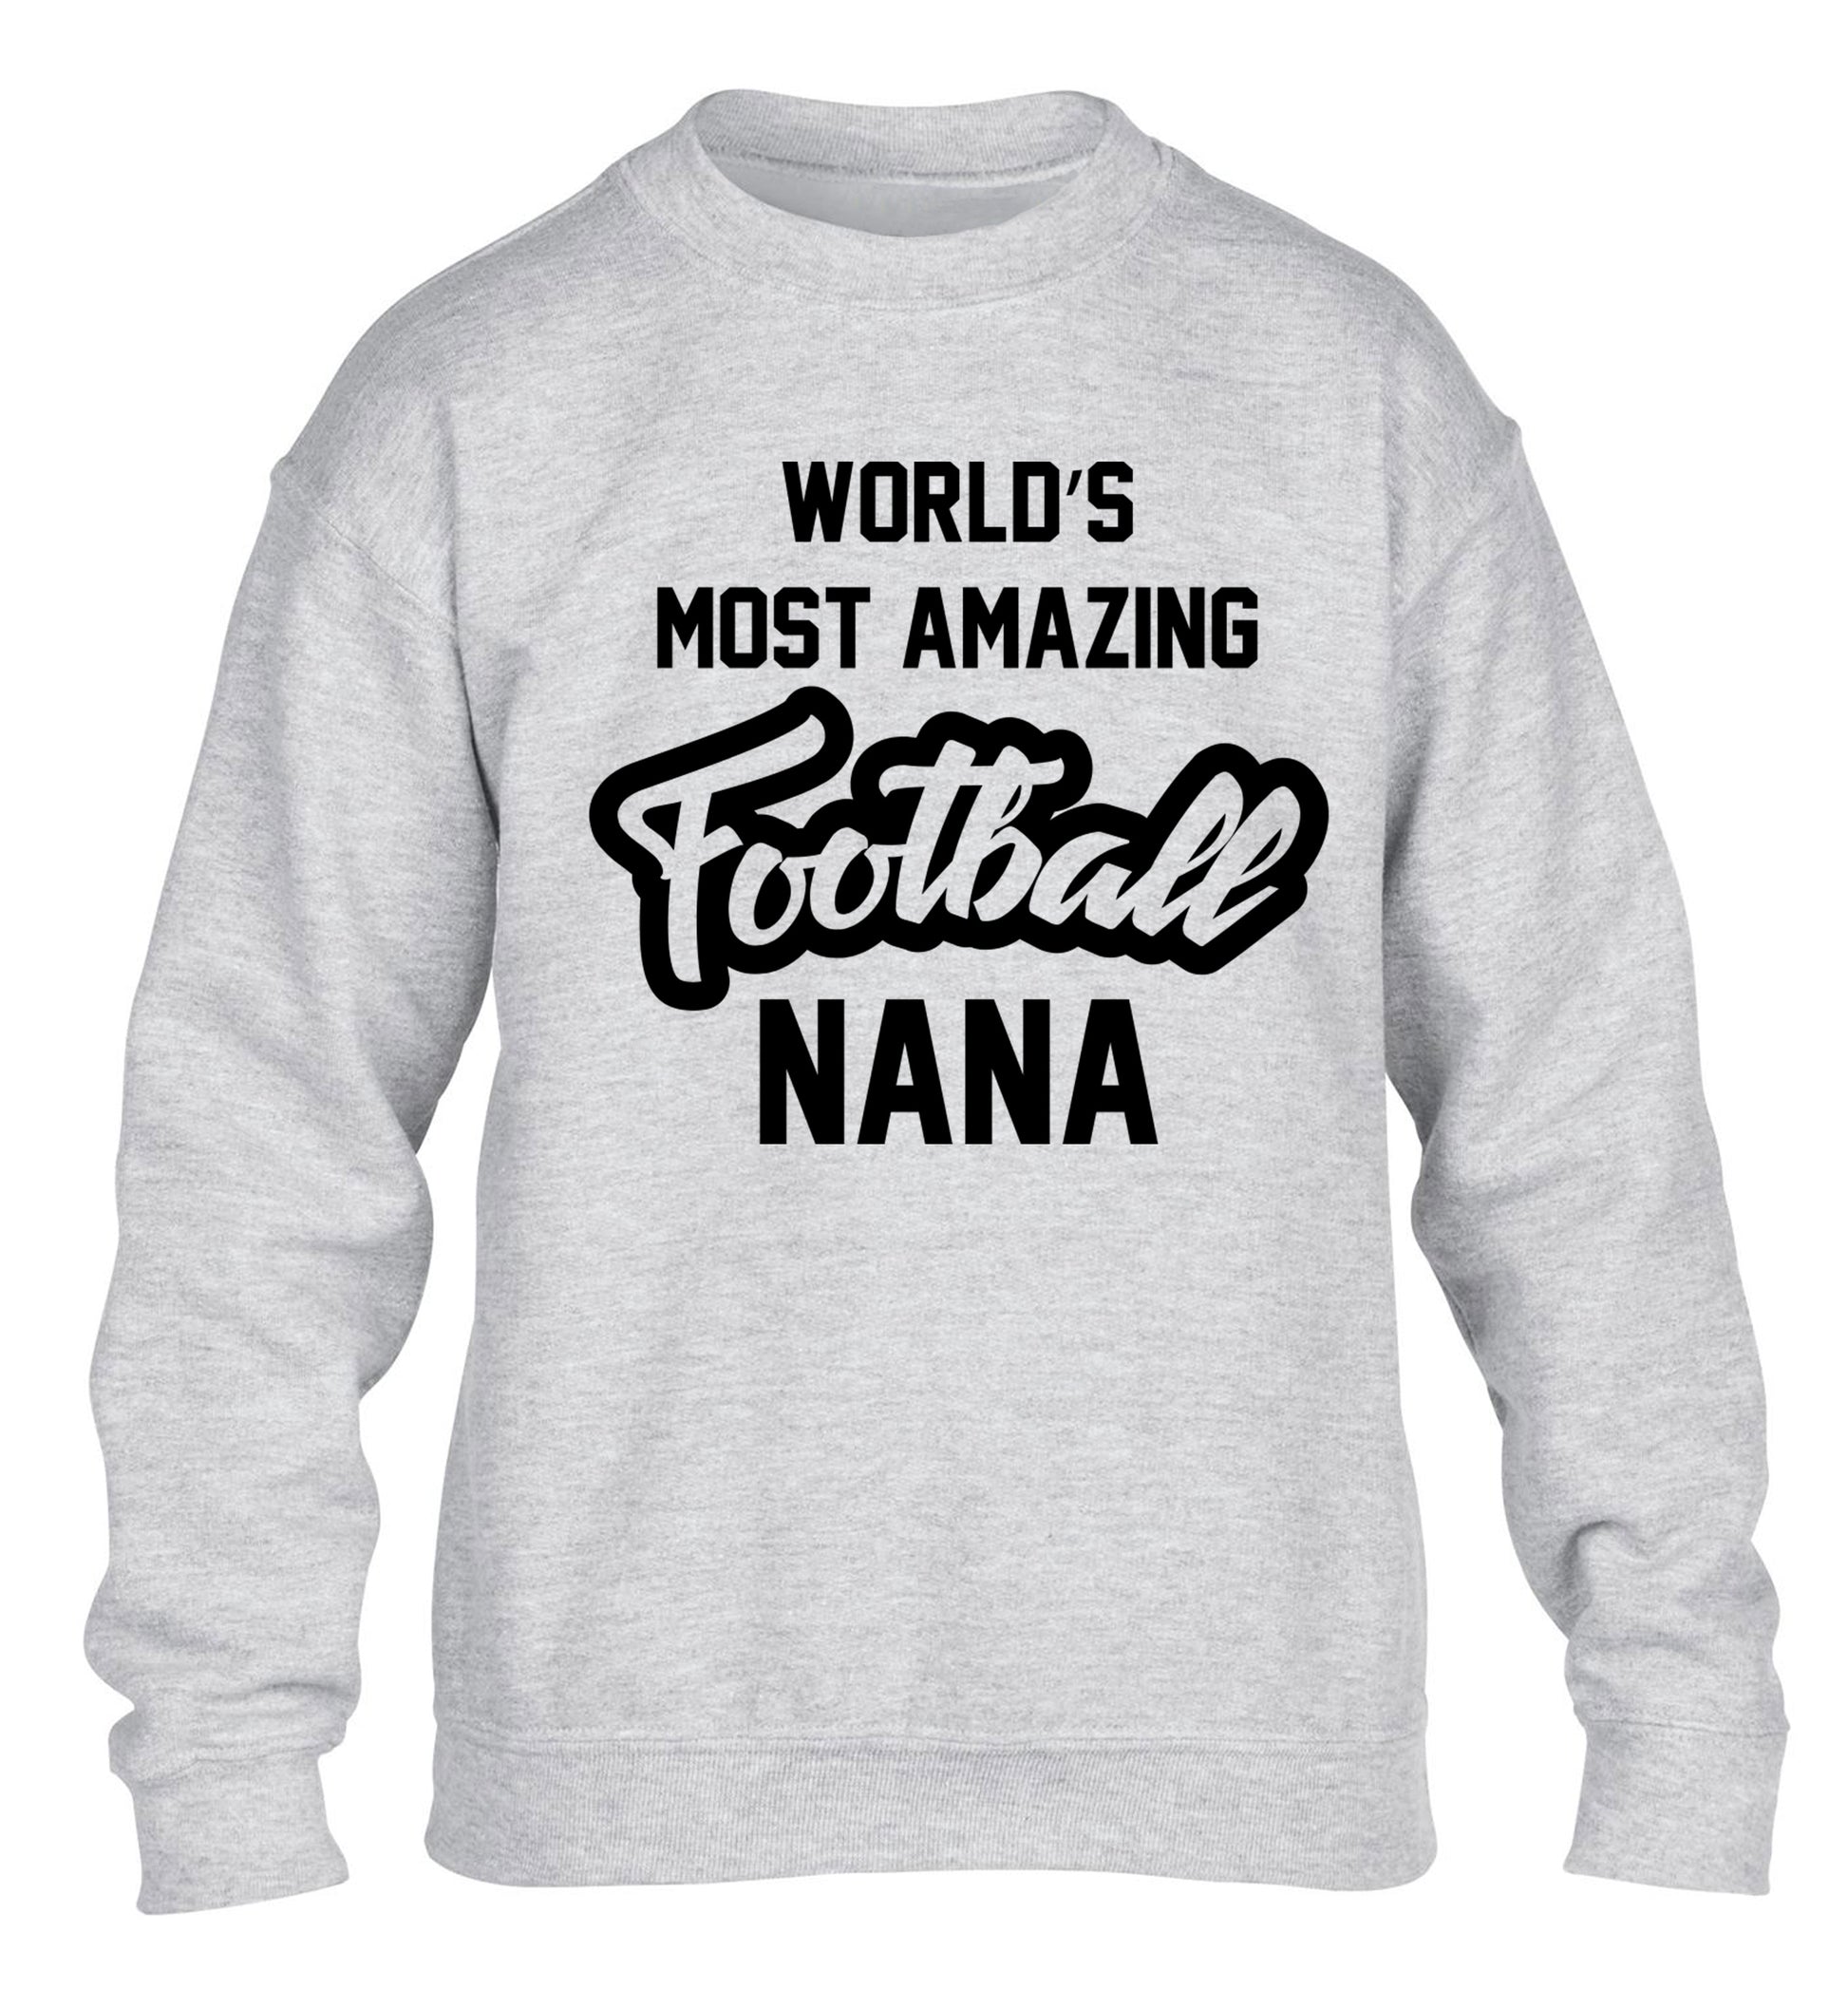 Worlds most amazing football nana children's grey sweater 12-14 Years